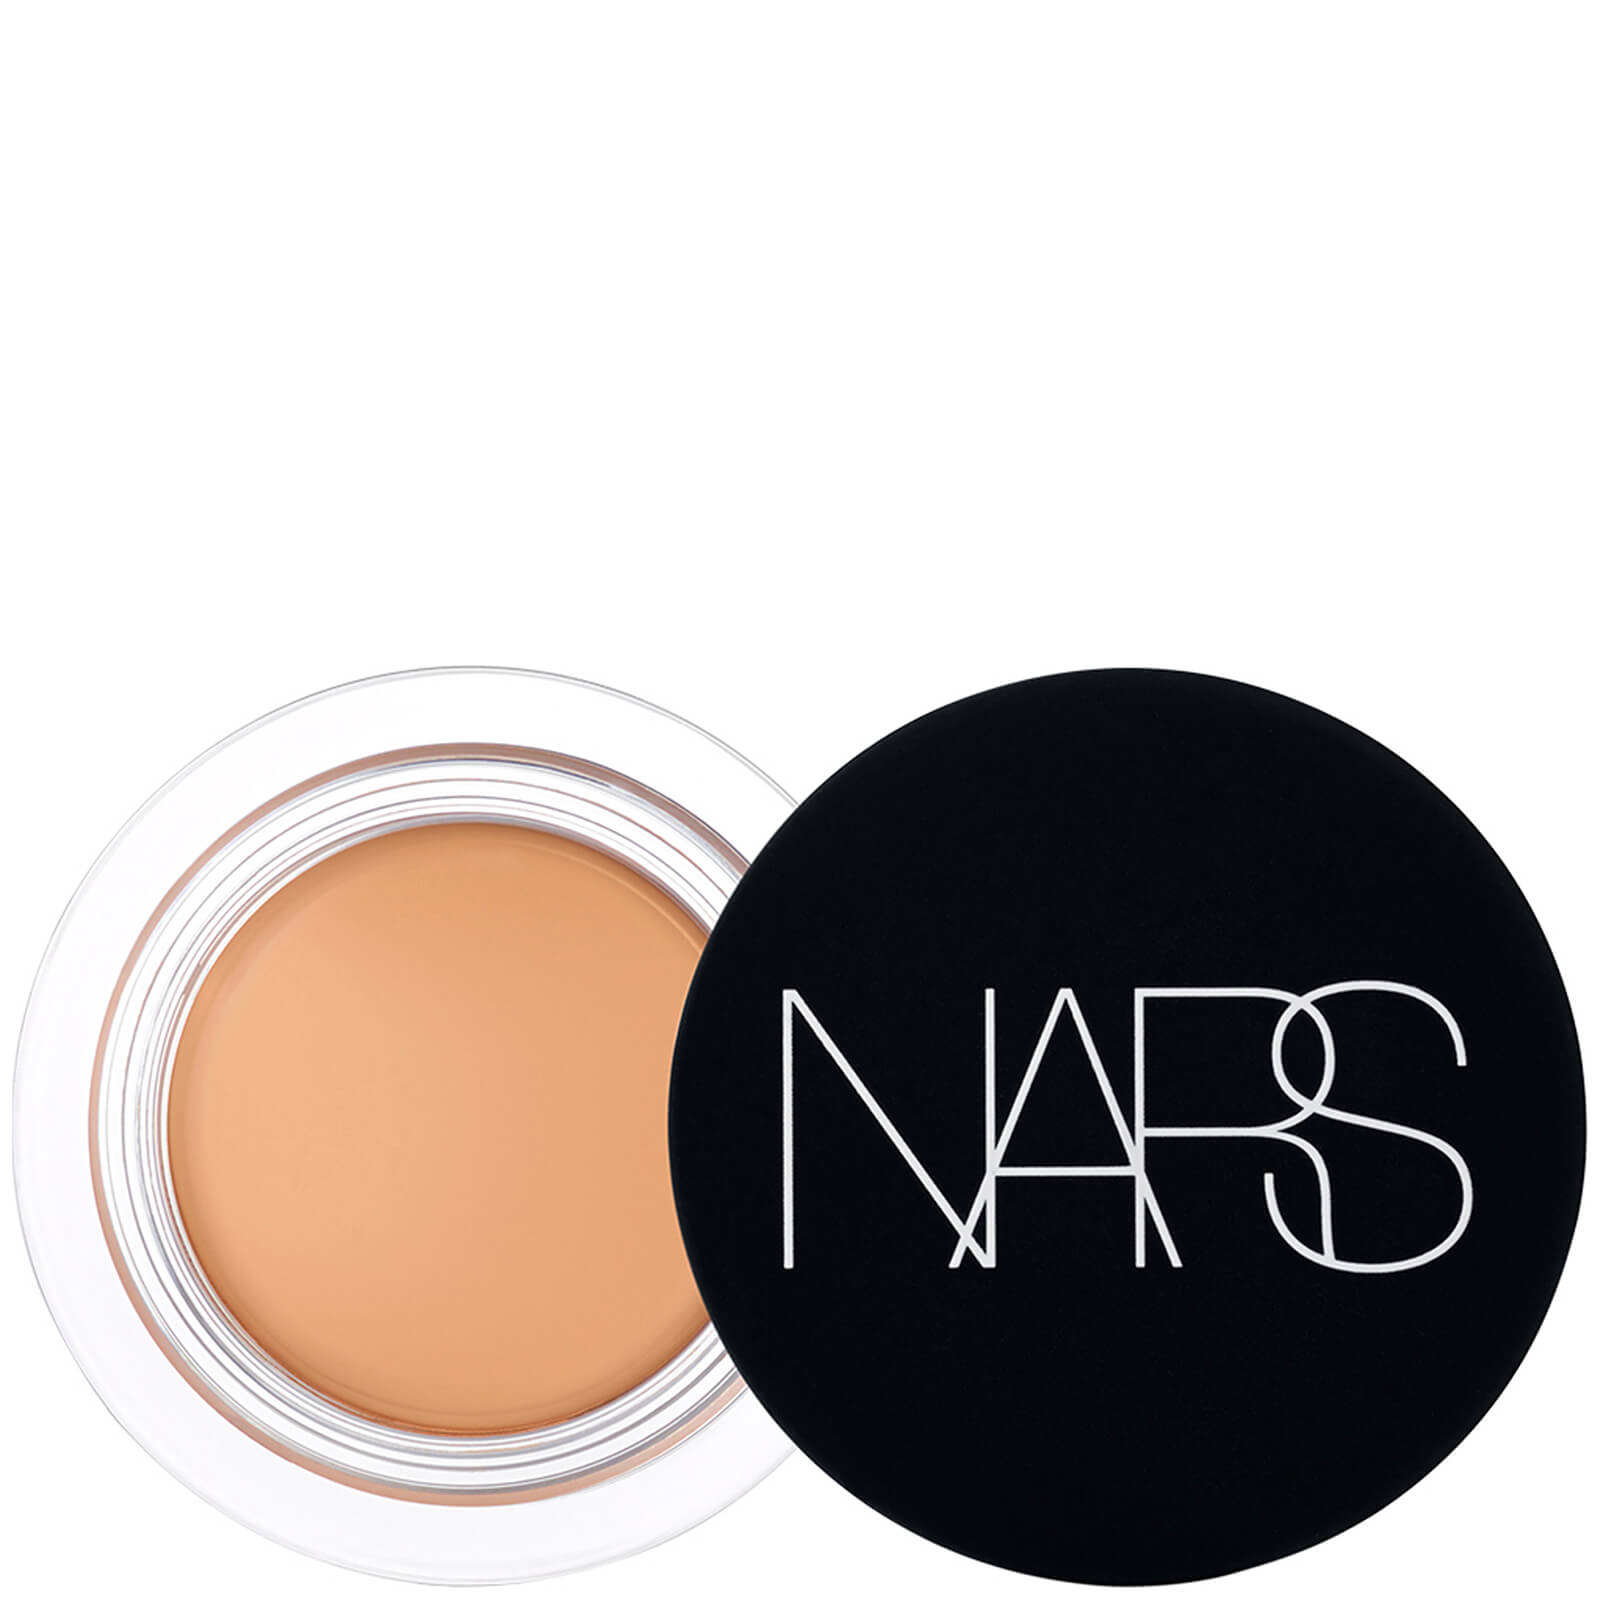 NARS Soft Matte Complete Concealer 6.2g (Various Shades) - Ginger